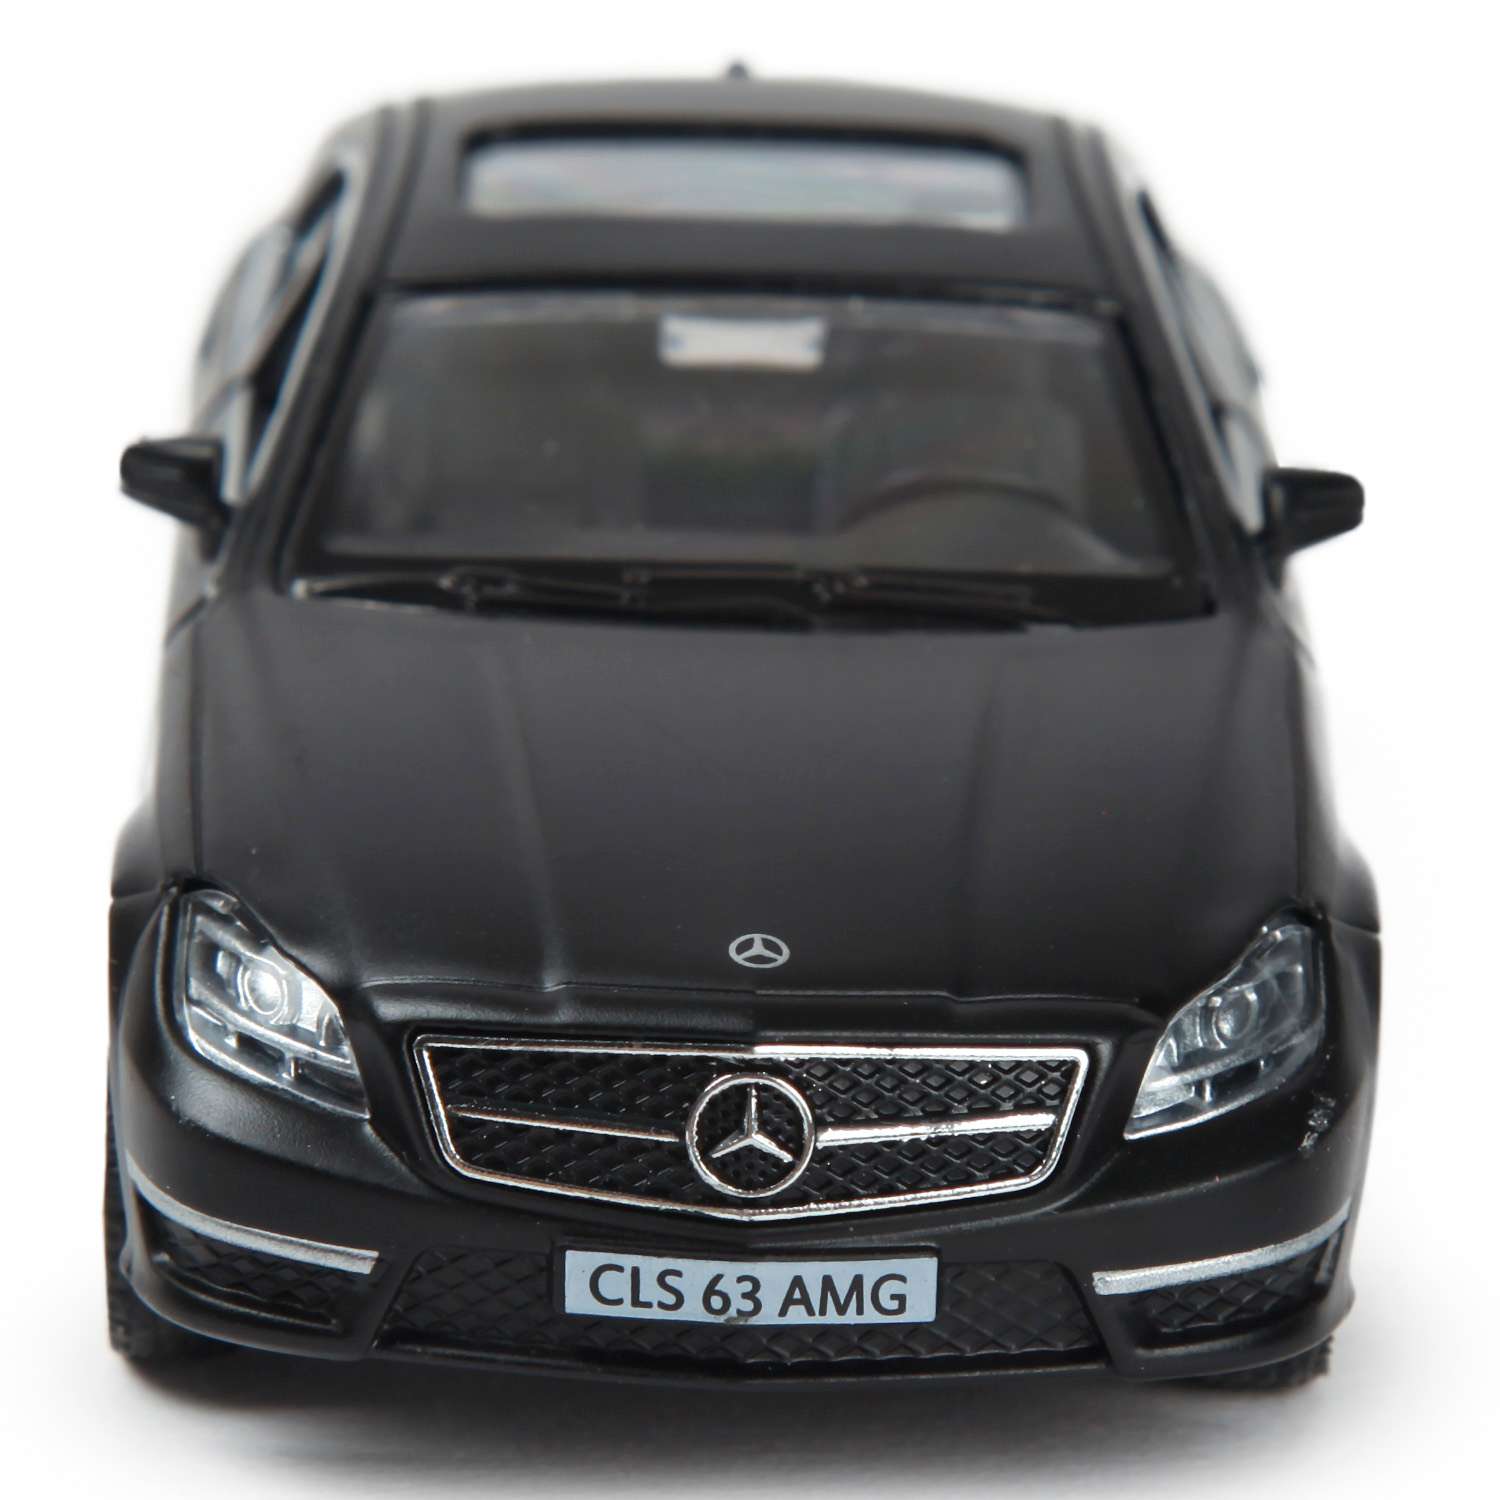 Машинка Mobicaro 1:32 Mercedes Benz CLS 63 AMG Черная 544995M 544995M - фото 6